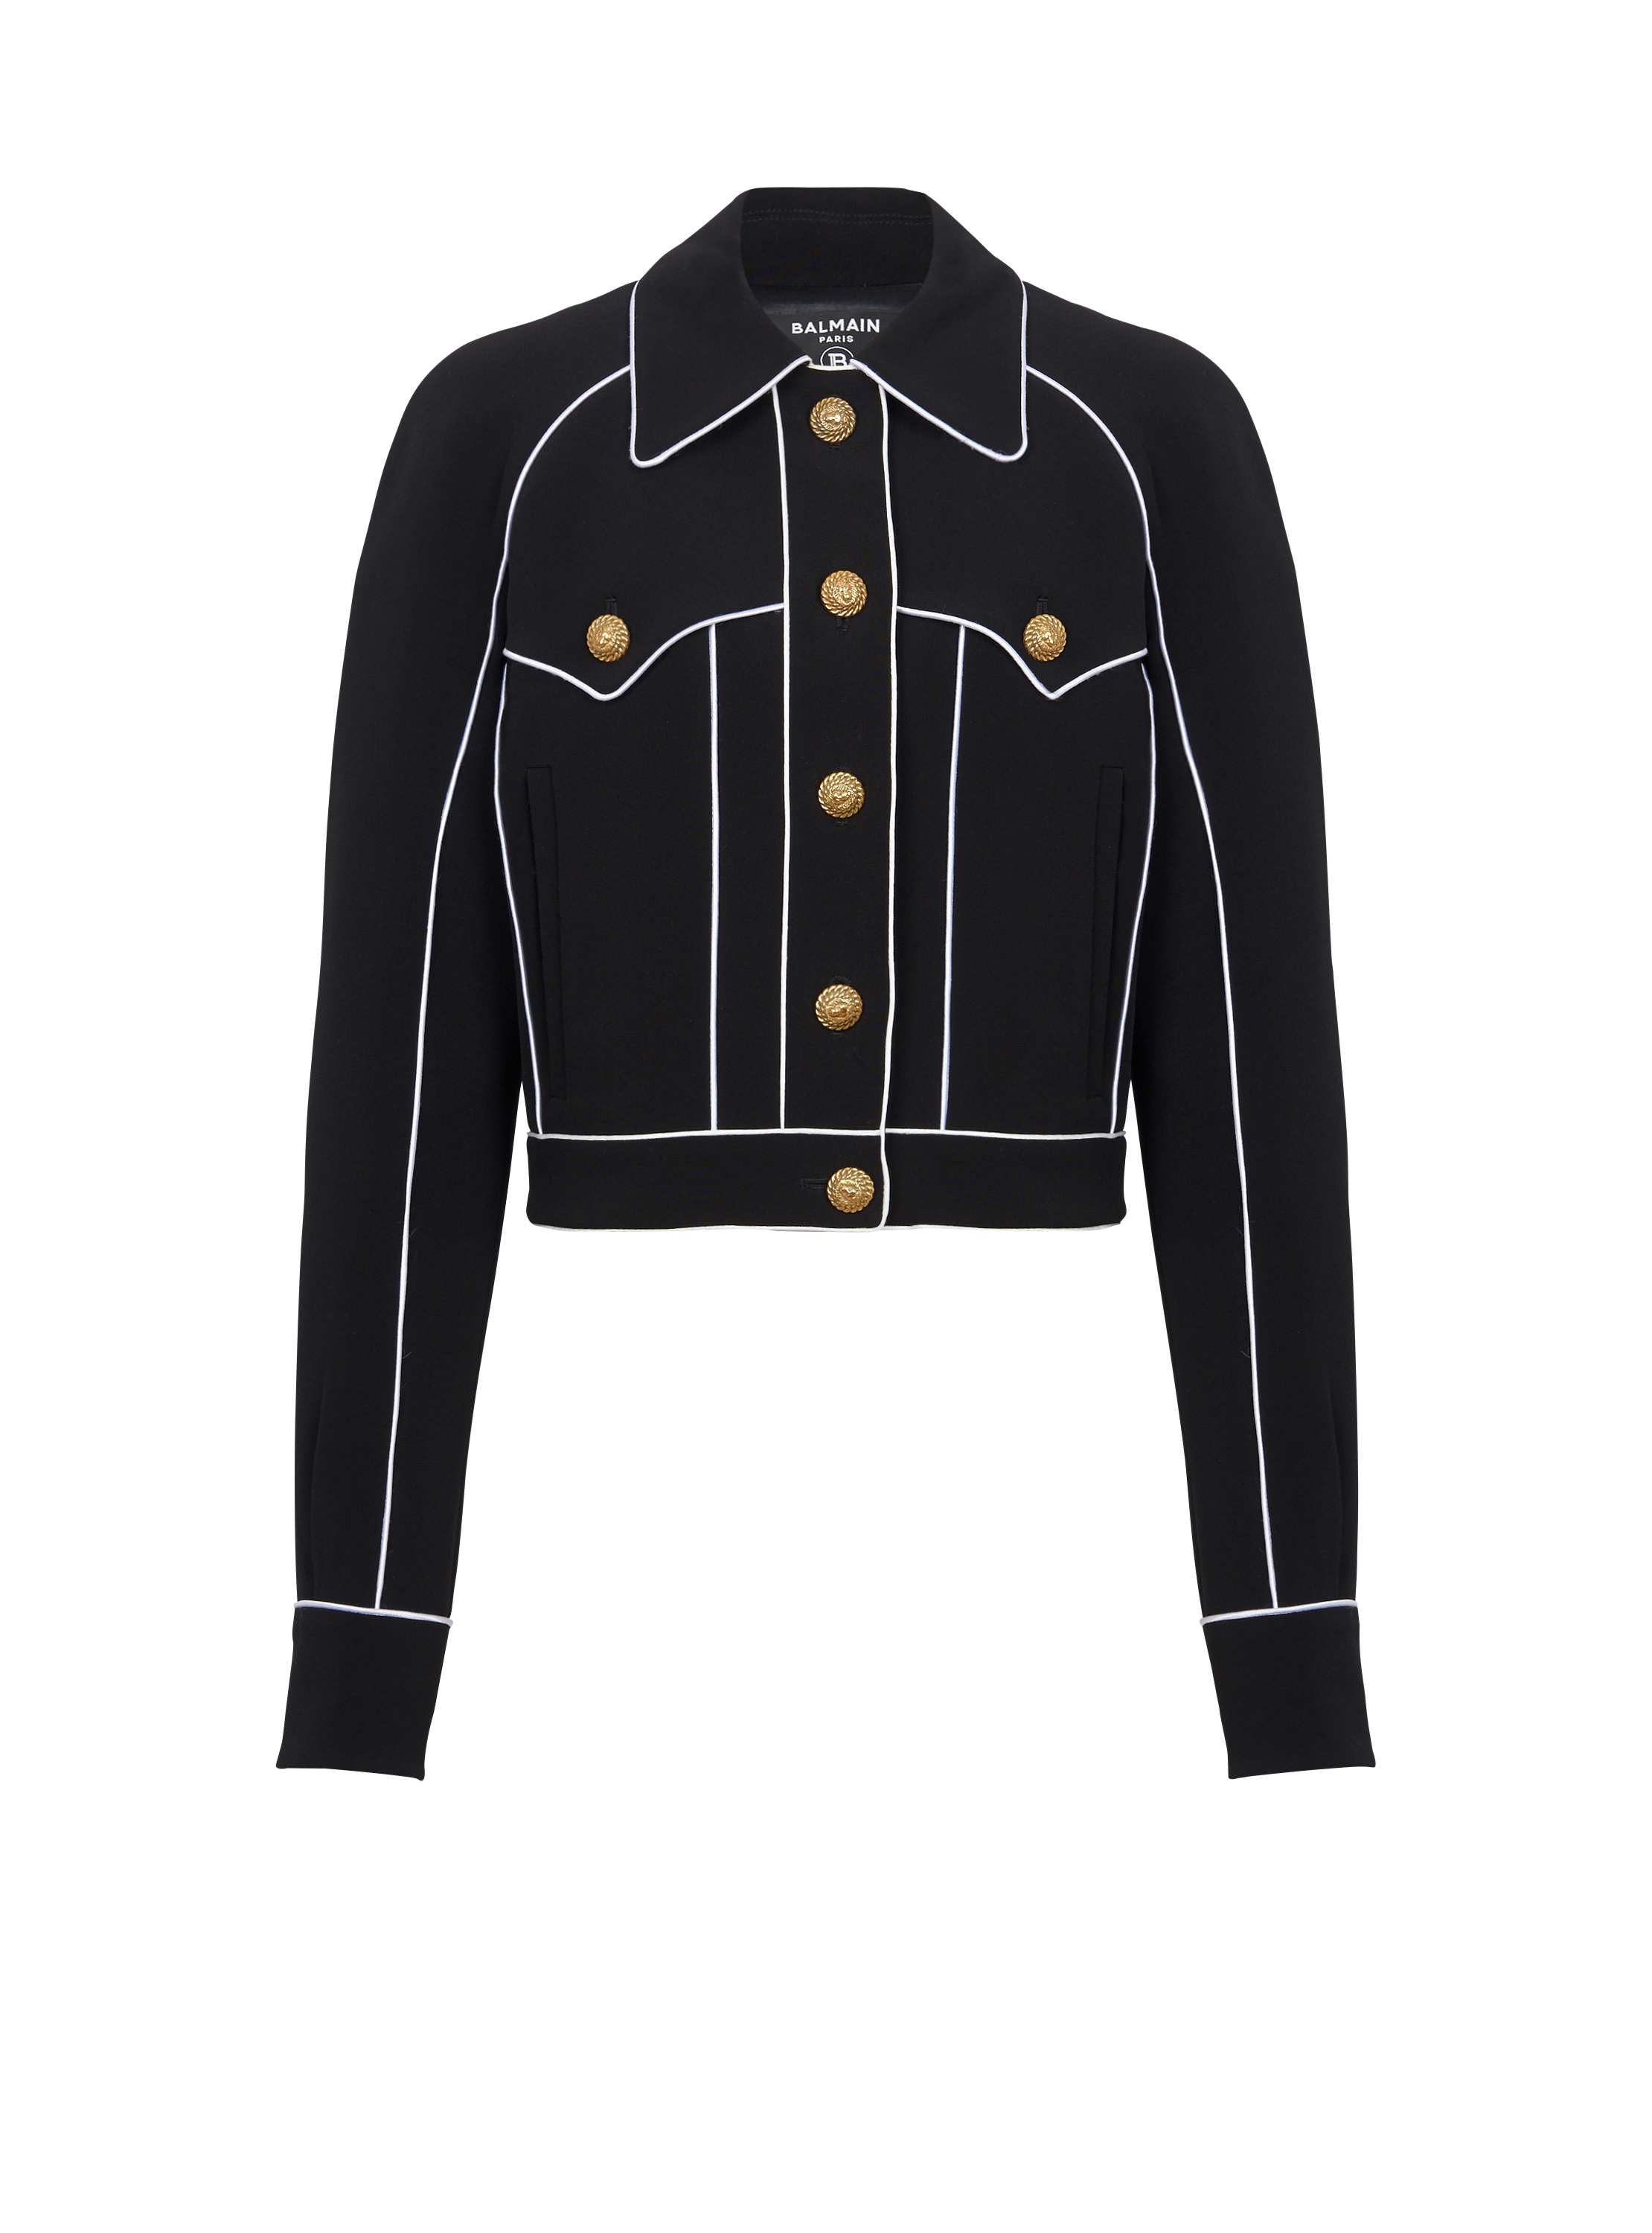 Western crepe jacket, black, hi-res